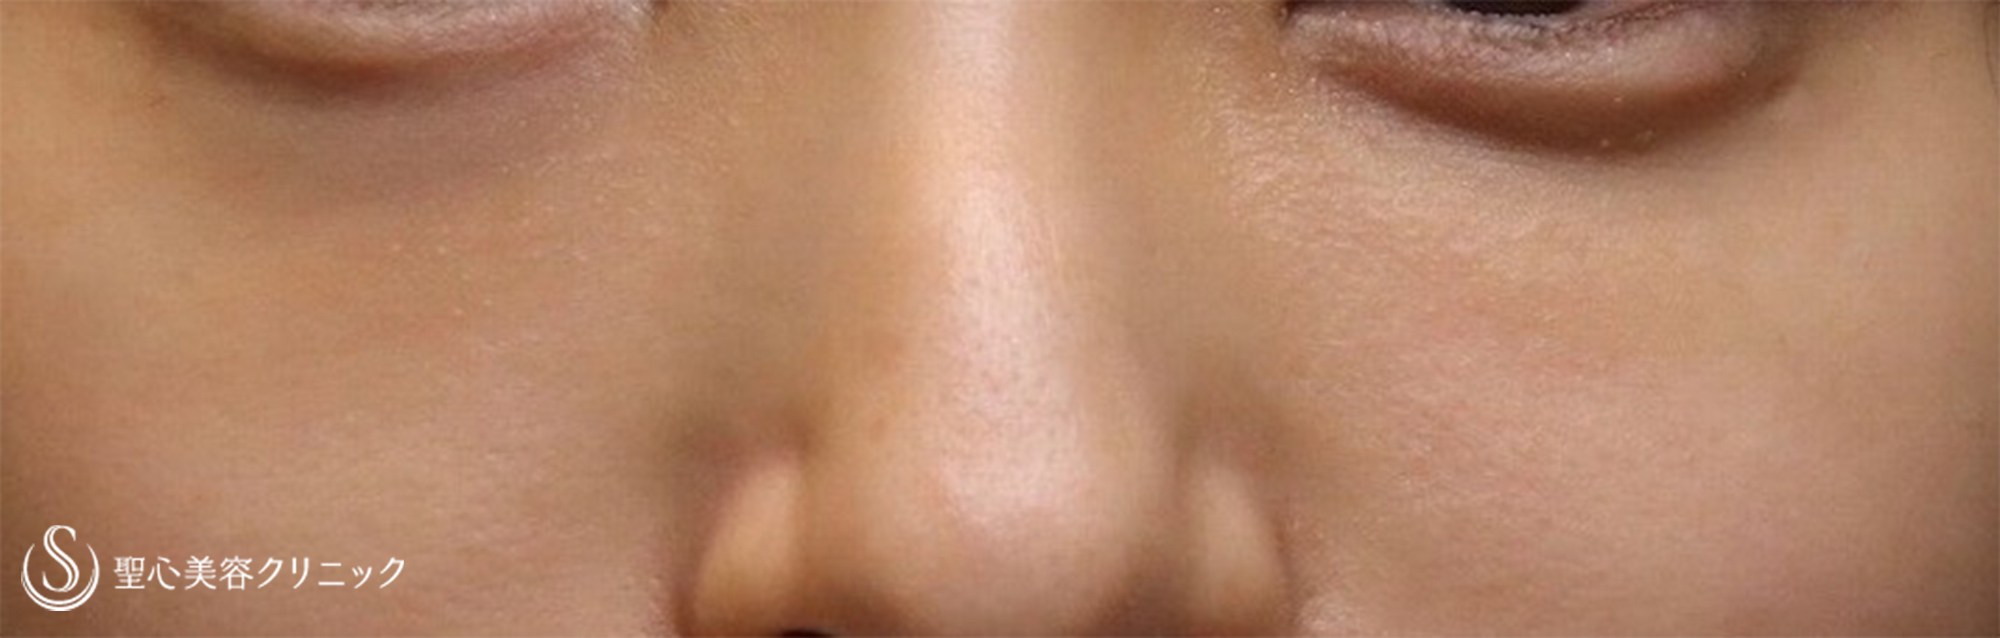 【20代女性・注入治療だけで目の下のクマ改善】プレミアムPRP皮膚再生療法 （6ヶ月後） After 